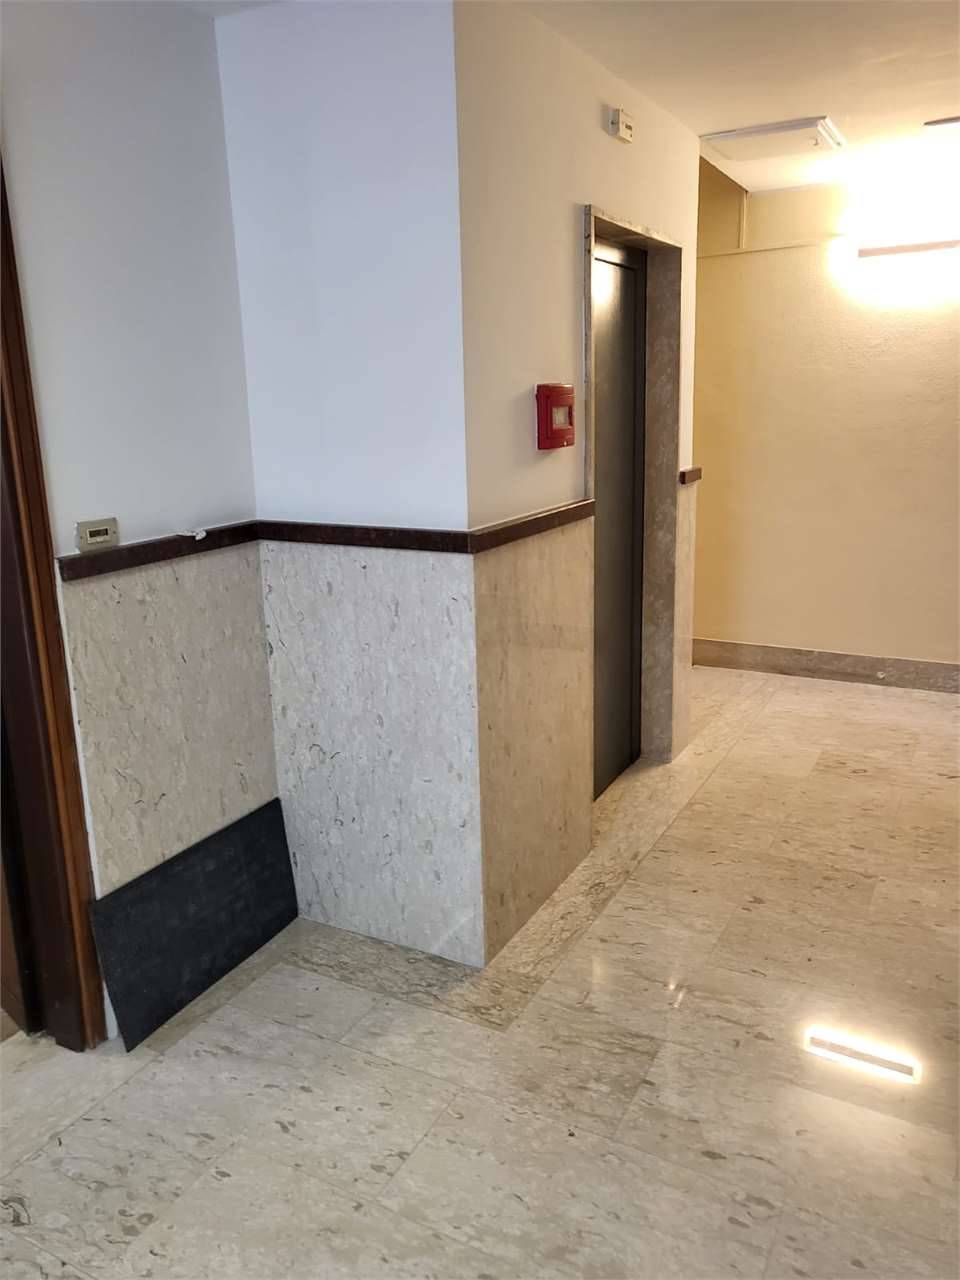 Ufficio in Affitto a Frosinone Centro